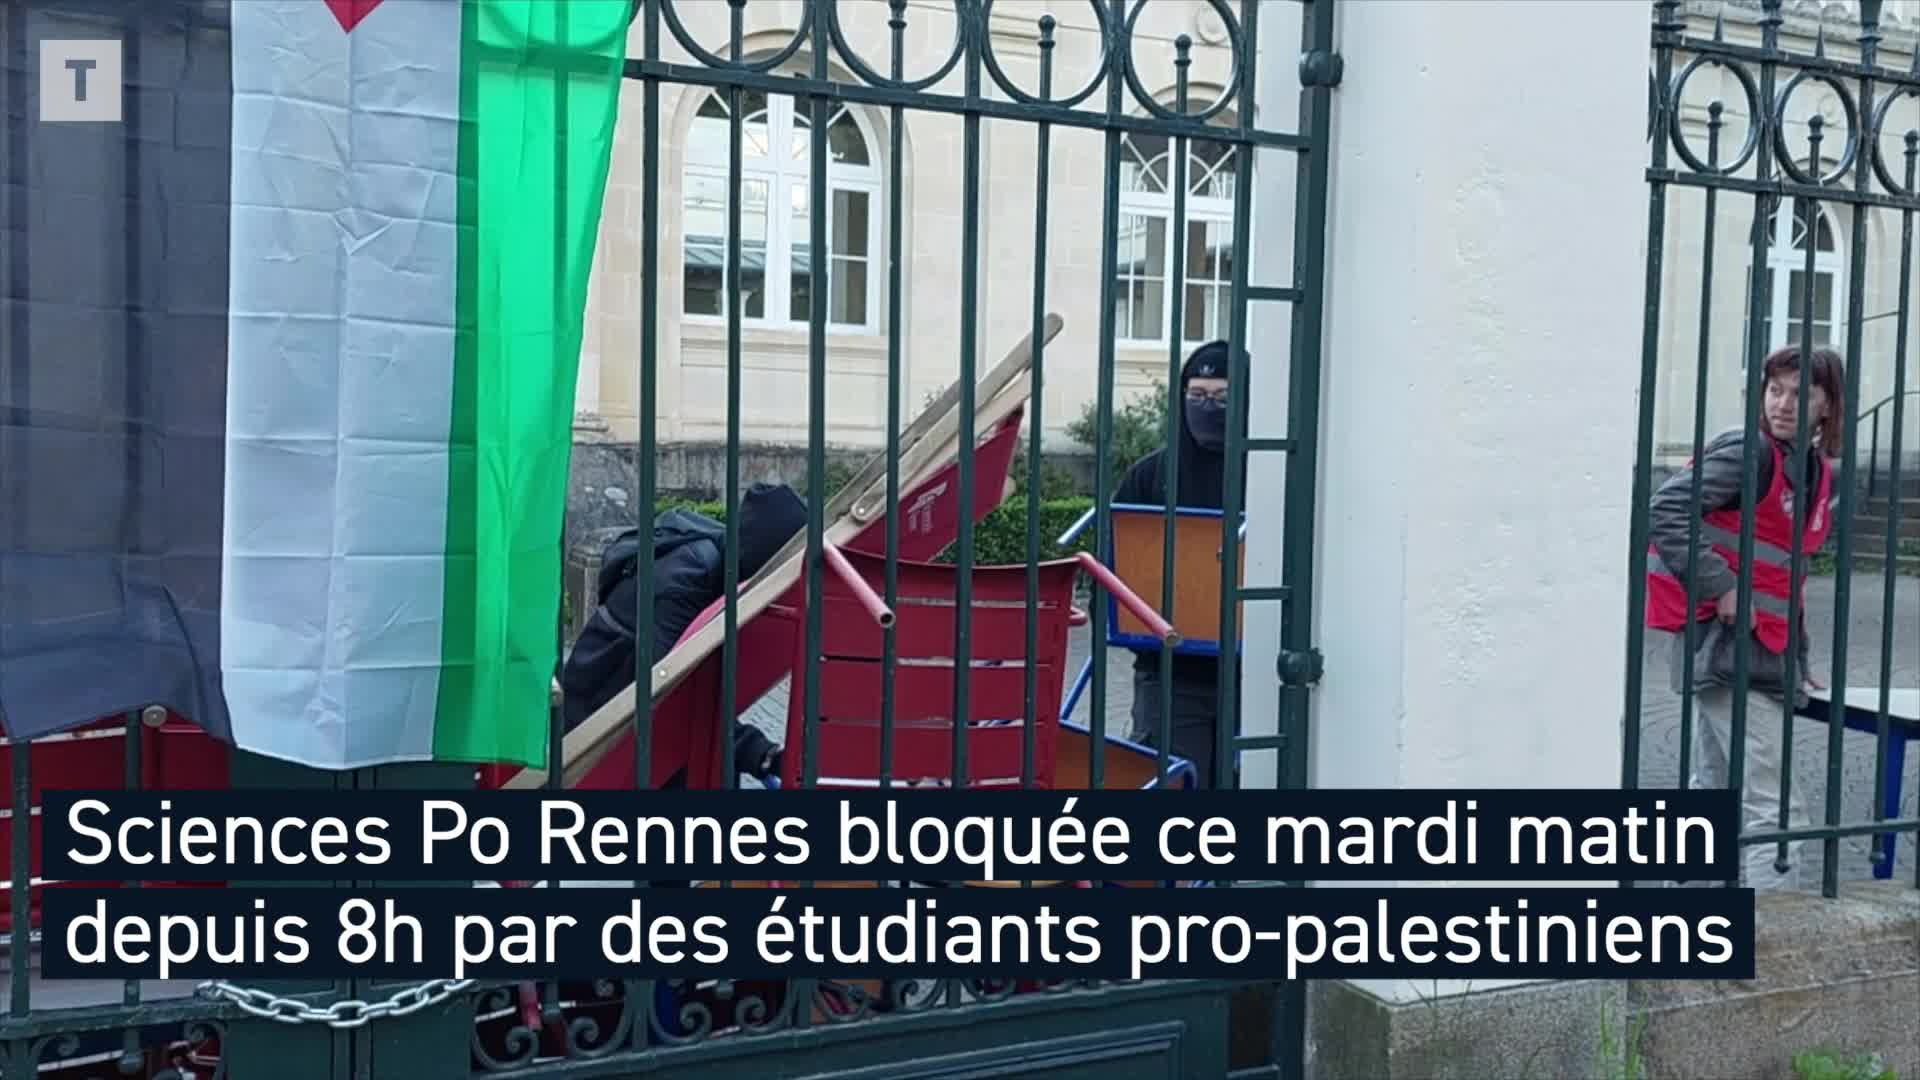 Blocage de Sciences Po, fusillade à Rennes, incendies mortels à Paris : le point à la mi-journée